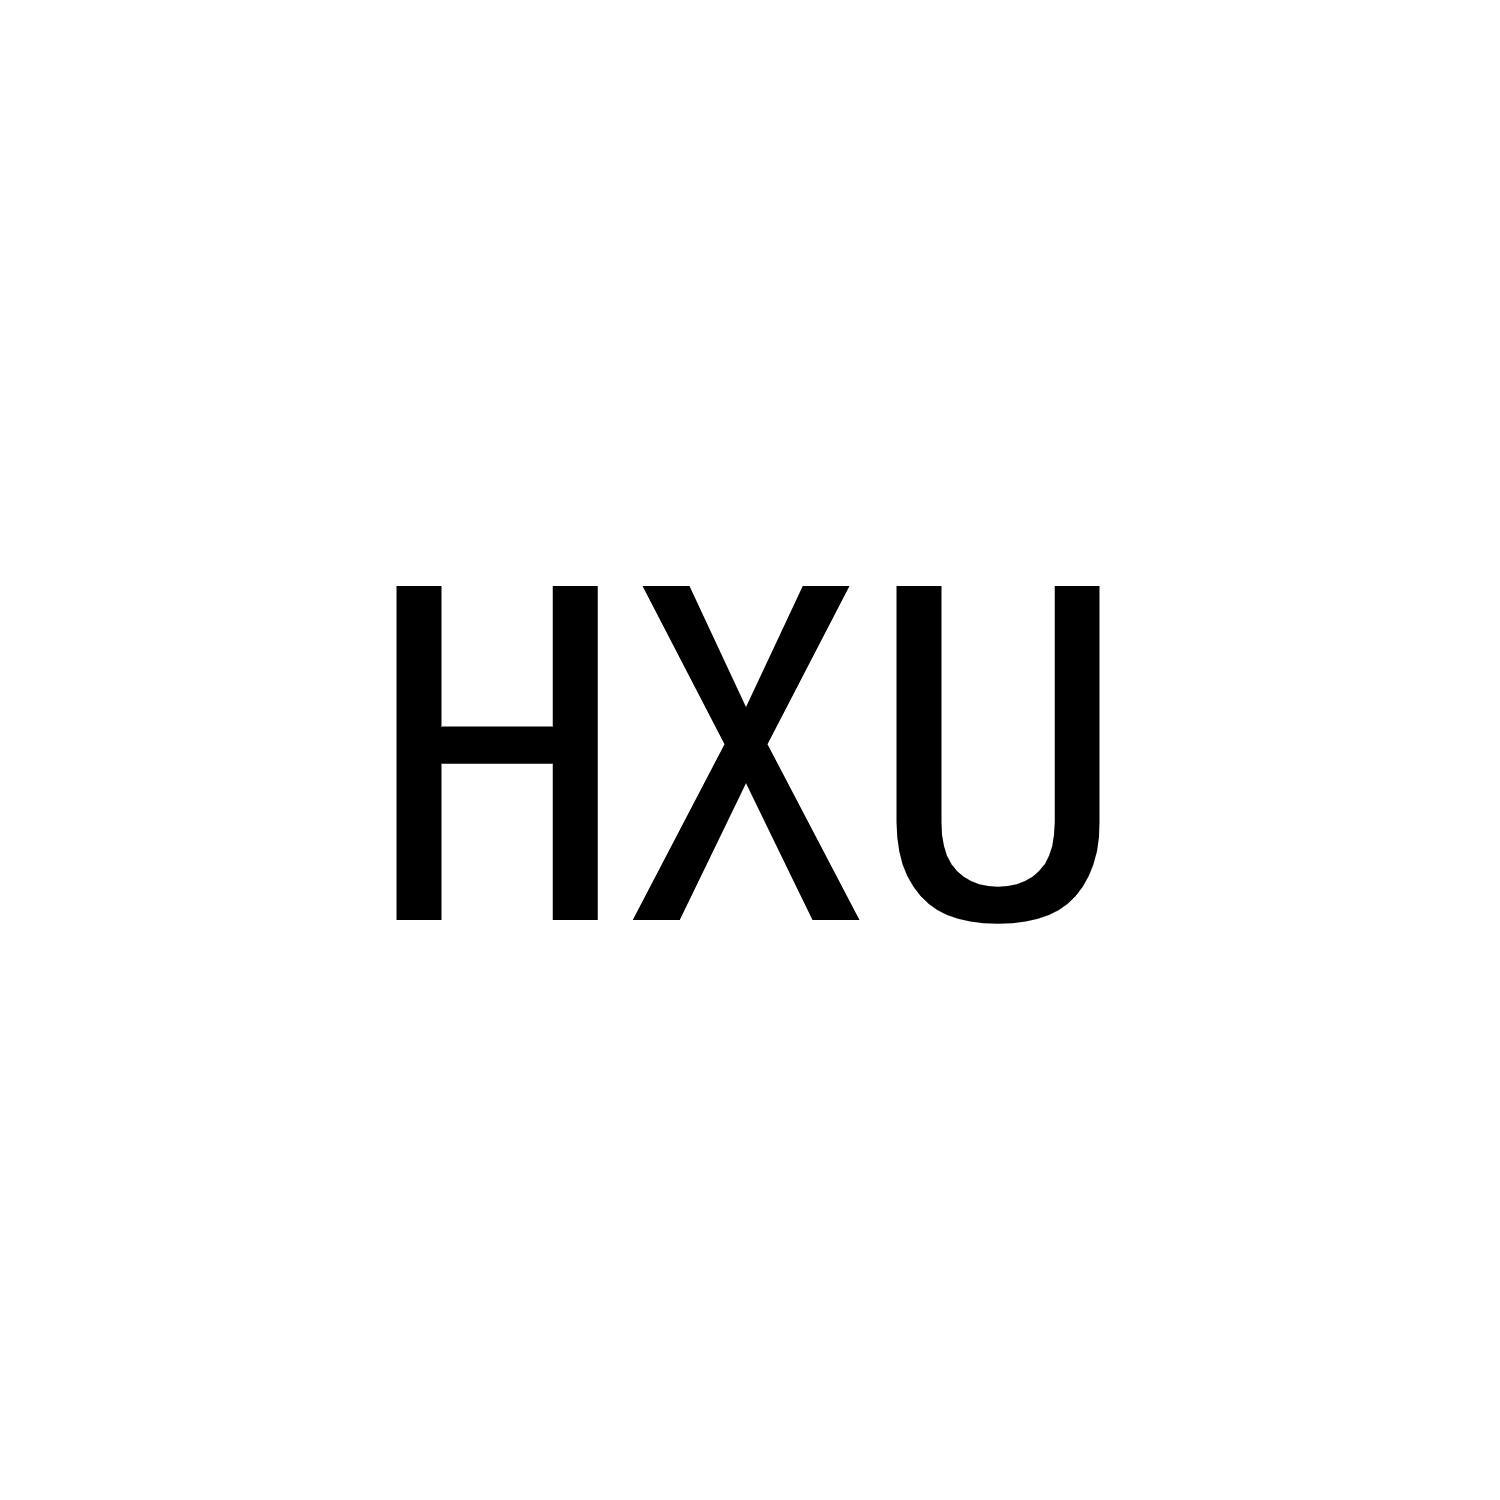 HXU